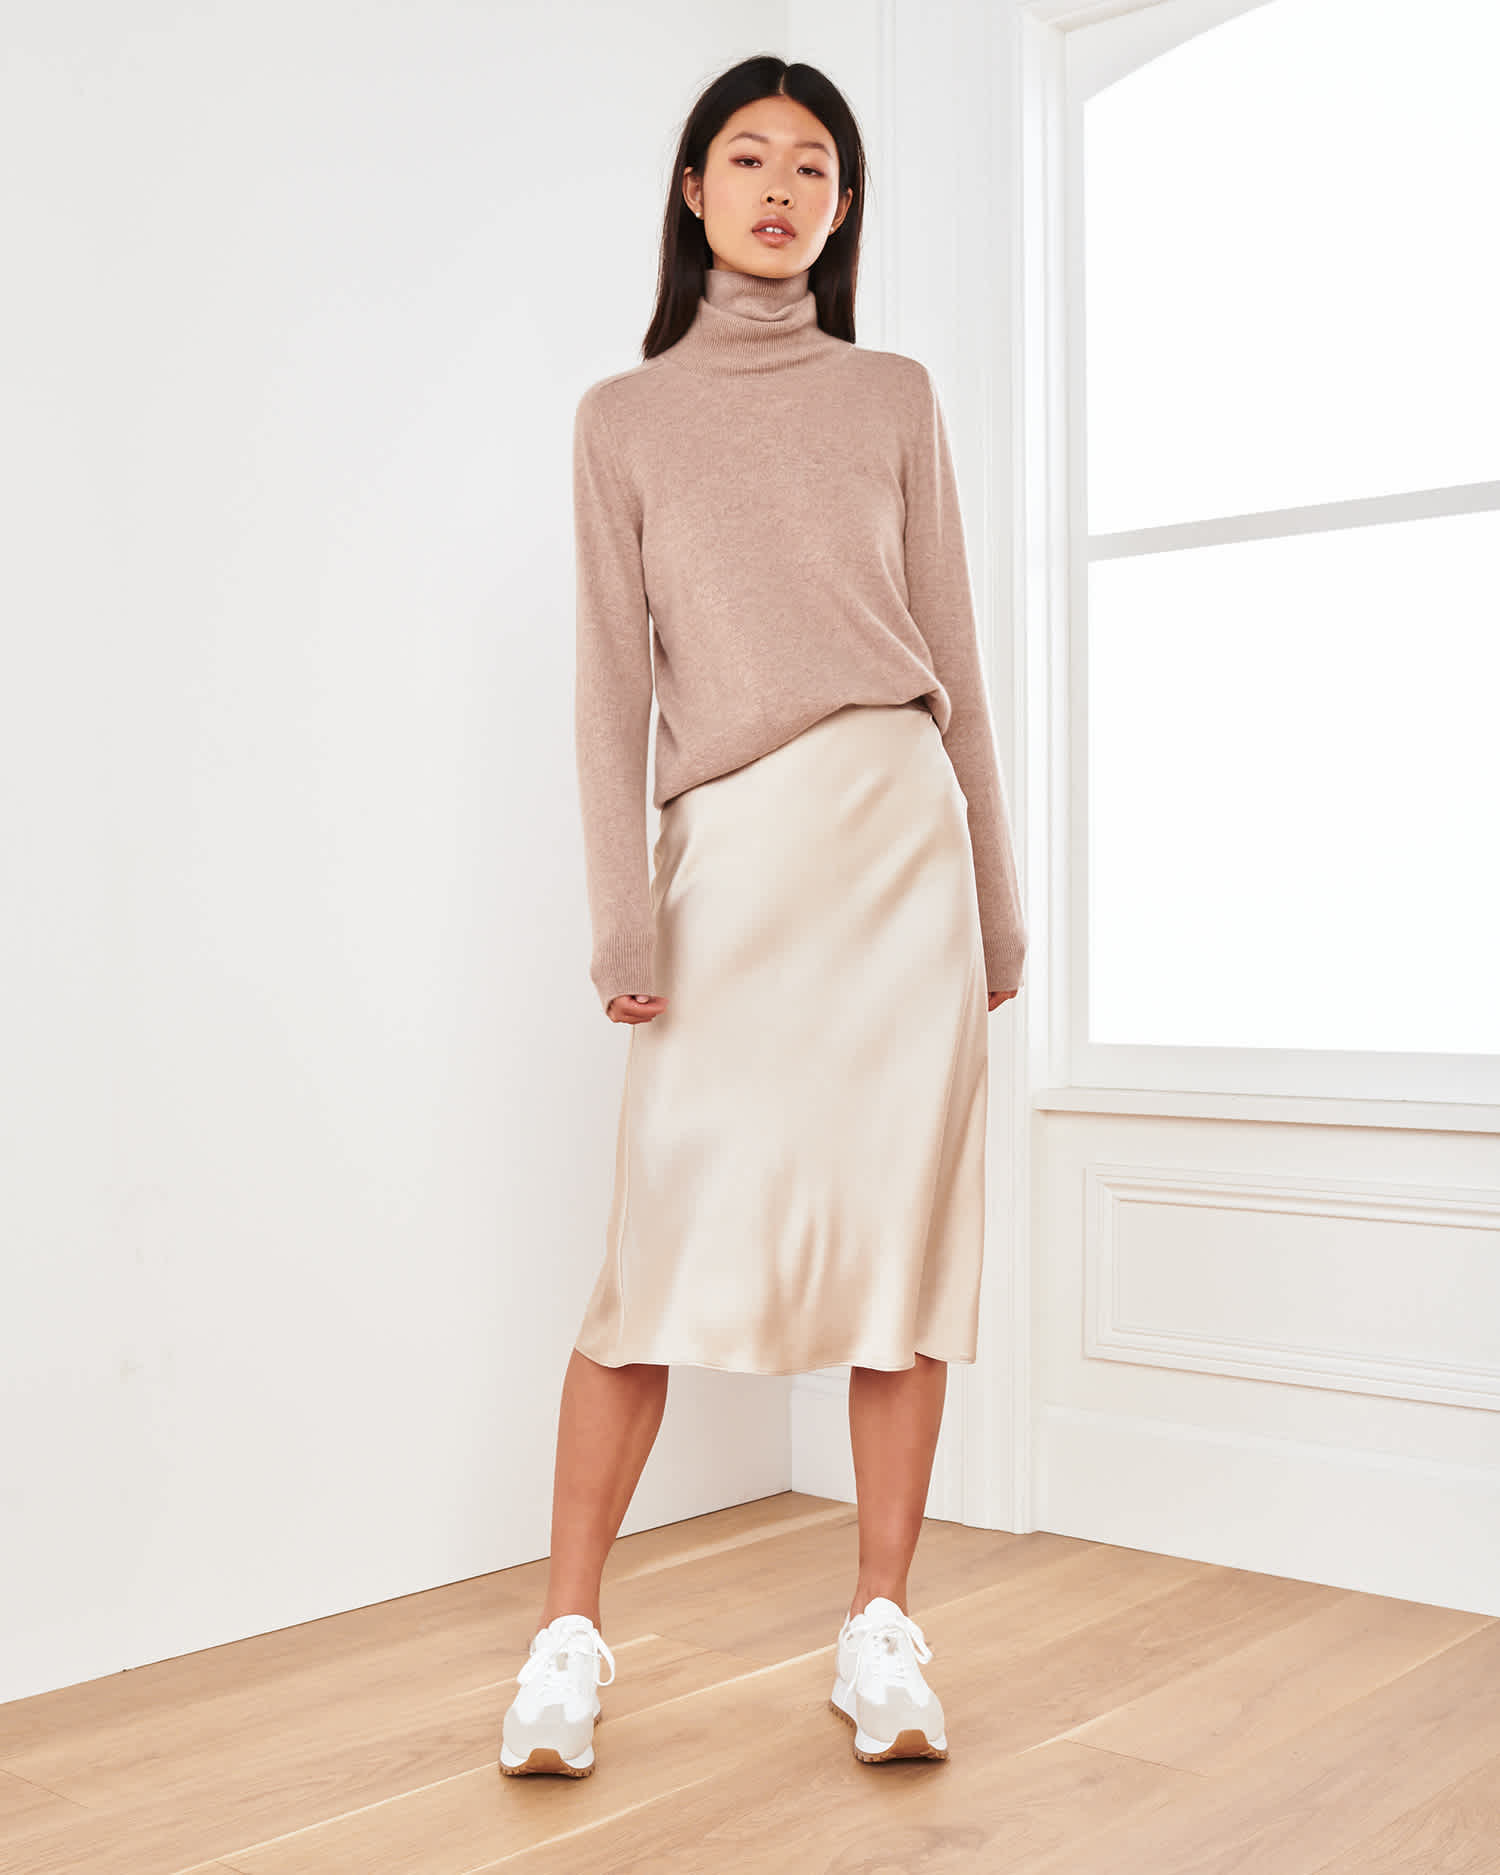 model wearing the light mint midi skirt